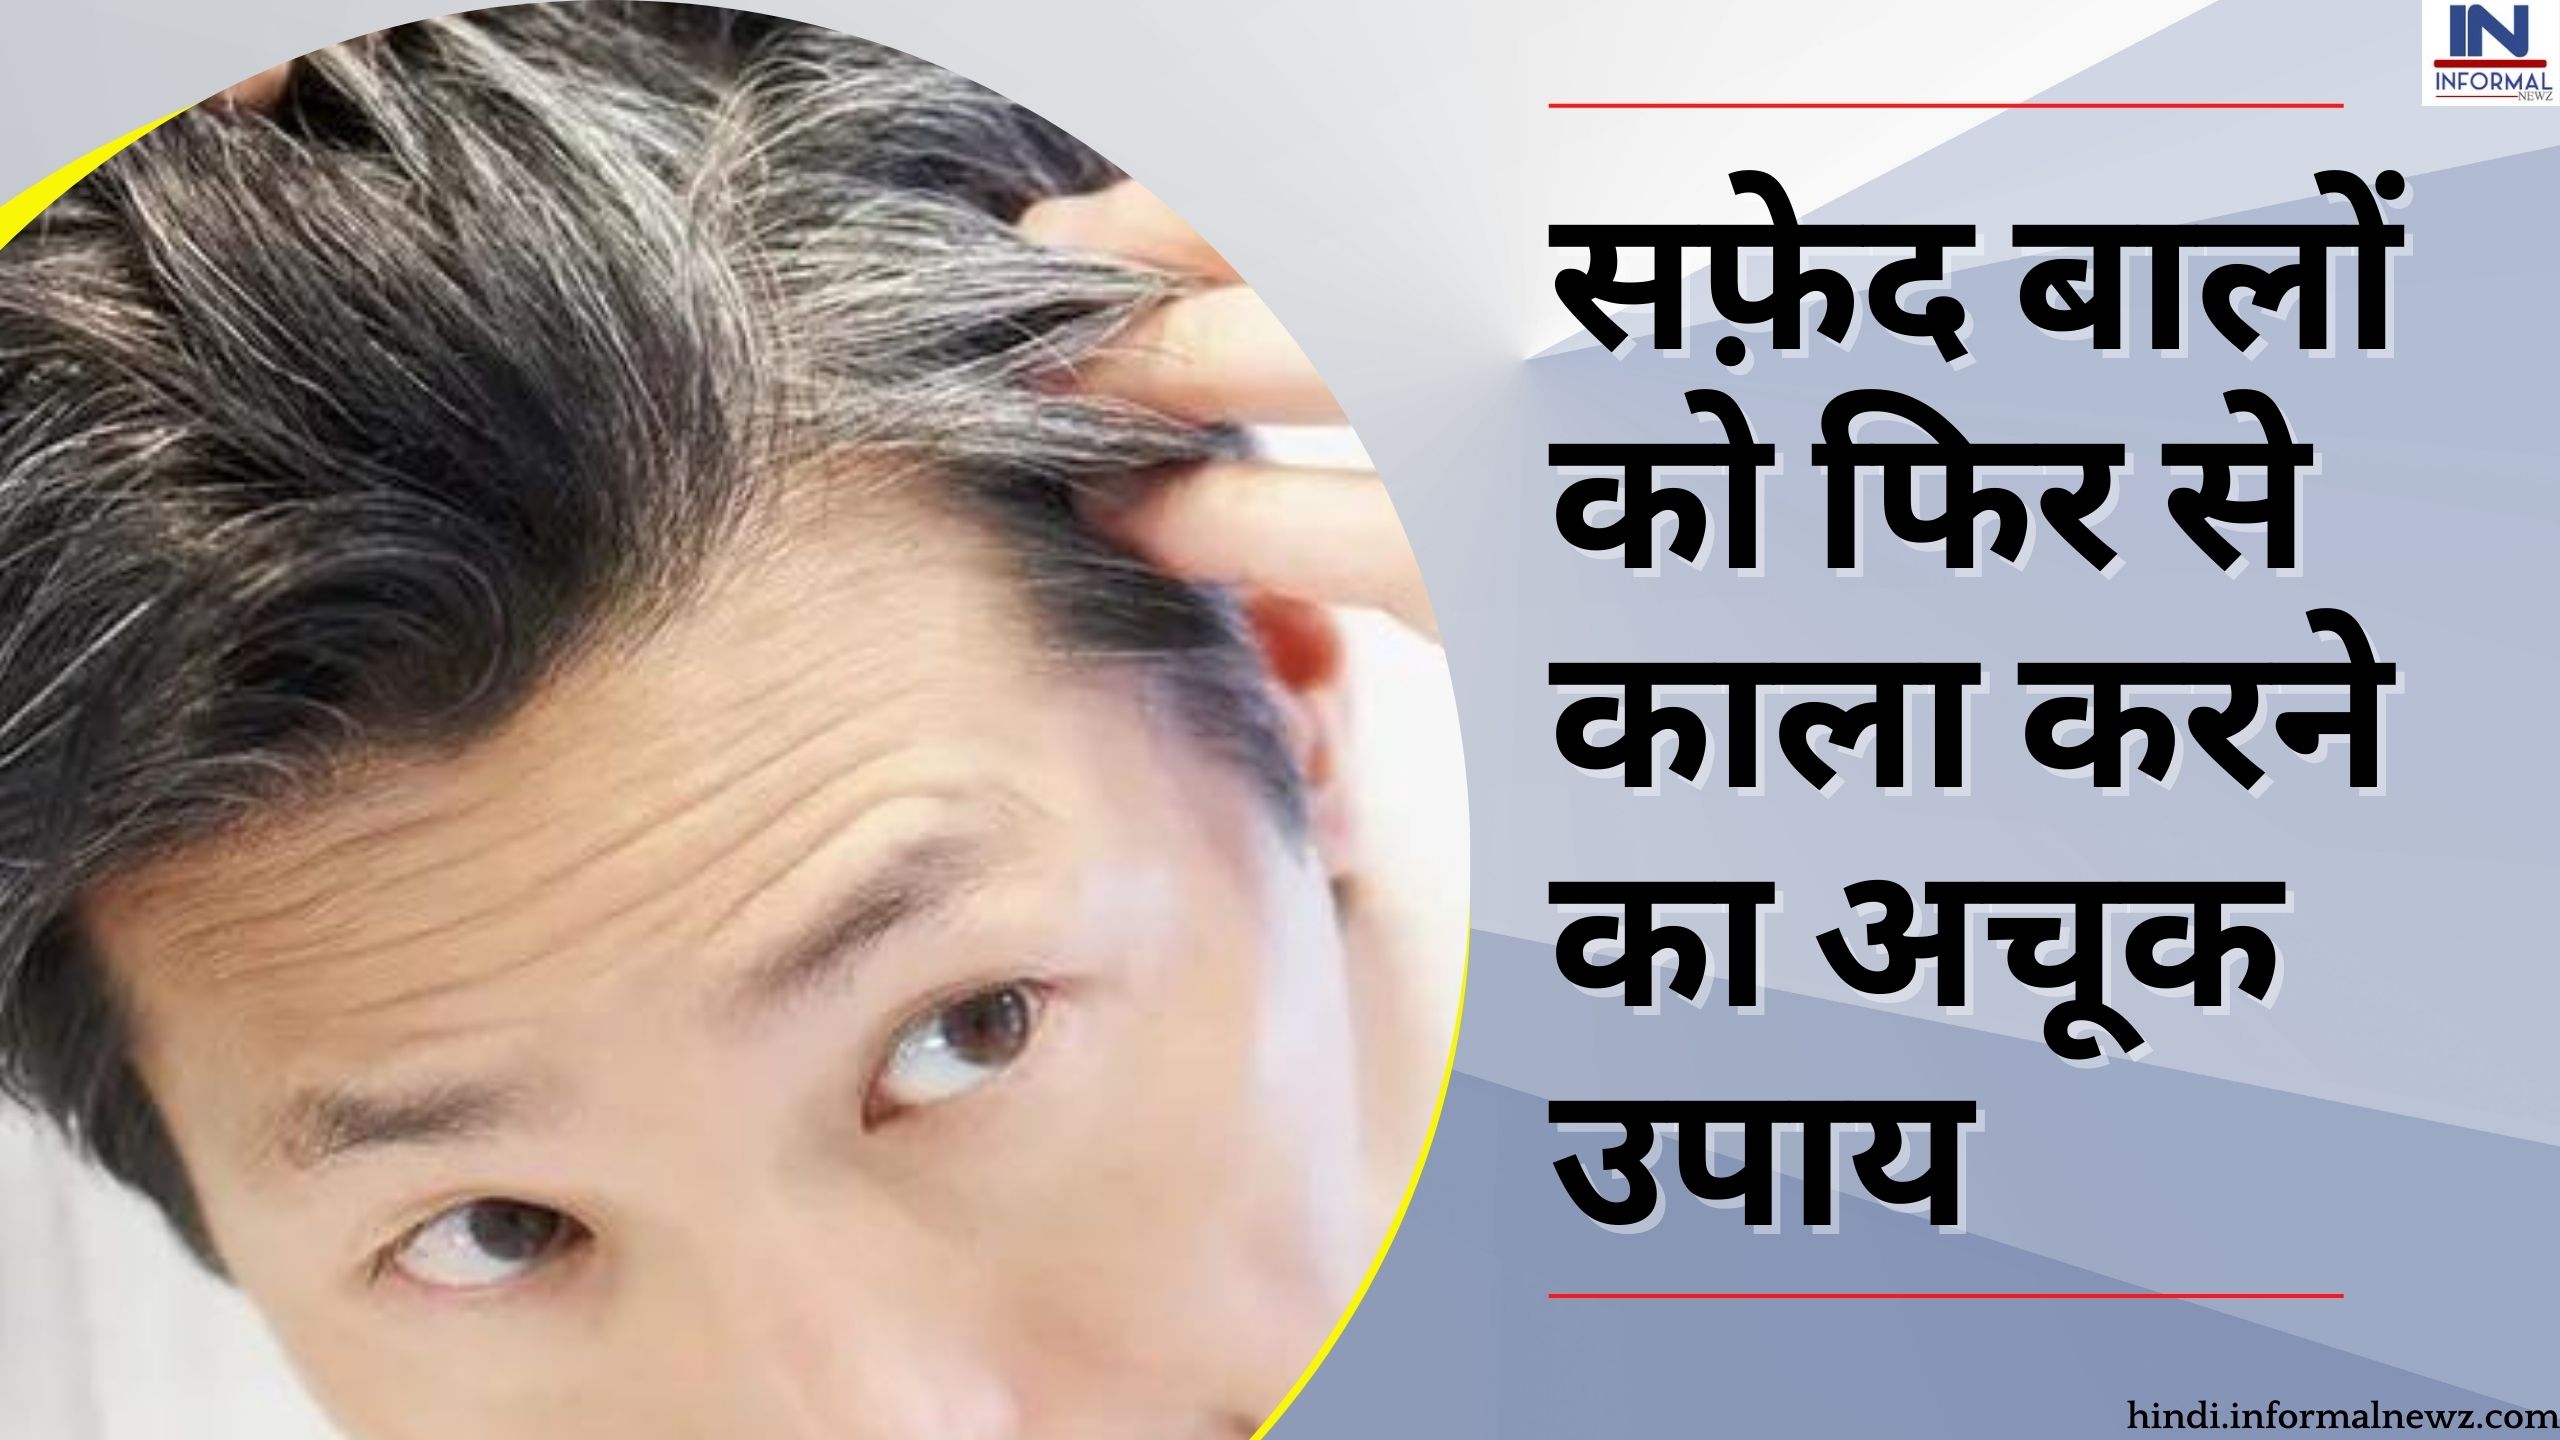 White Hair Home Remedies: सफ़ेद बालों को फिर से काला करने का अचूक उपाय,  अपनाइये ये घरेलू नुख्सा हो जायेगा समस्या का समाधान - हिन्दी समाचार, Hindi  breaking news ...